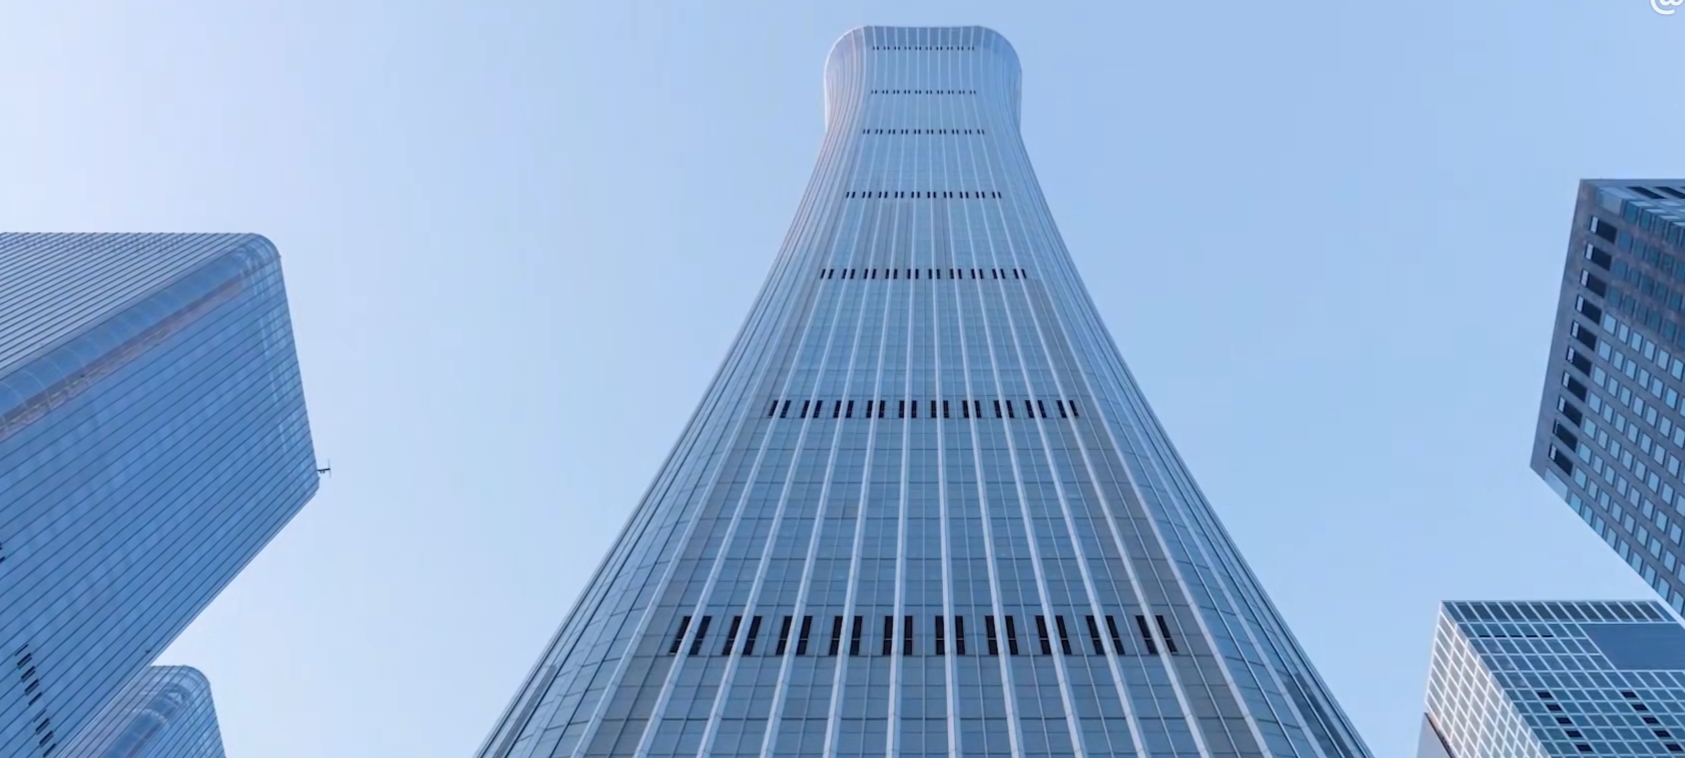 国内核心高楼之——北京中信大厦,又名中国尊,高528米